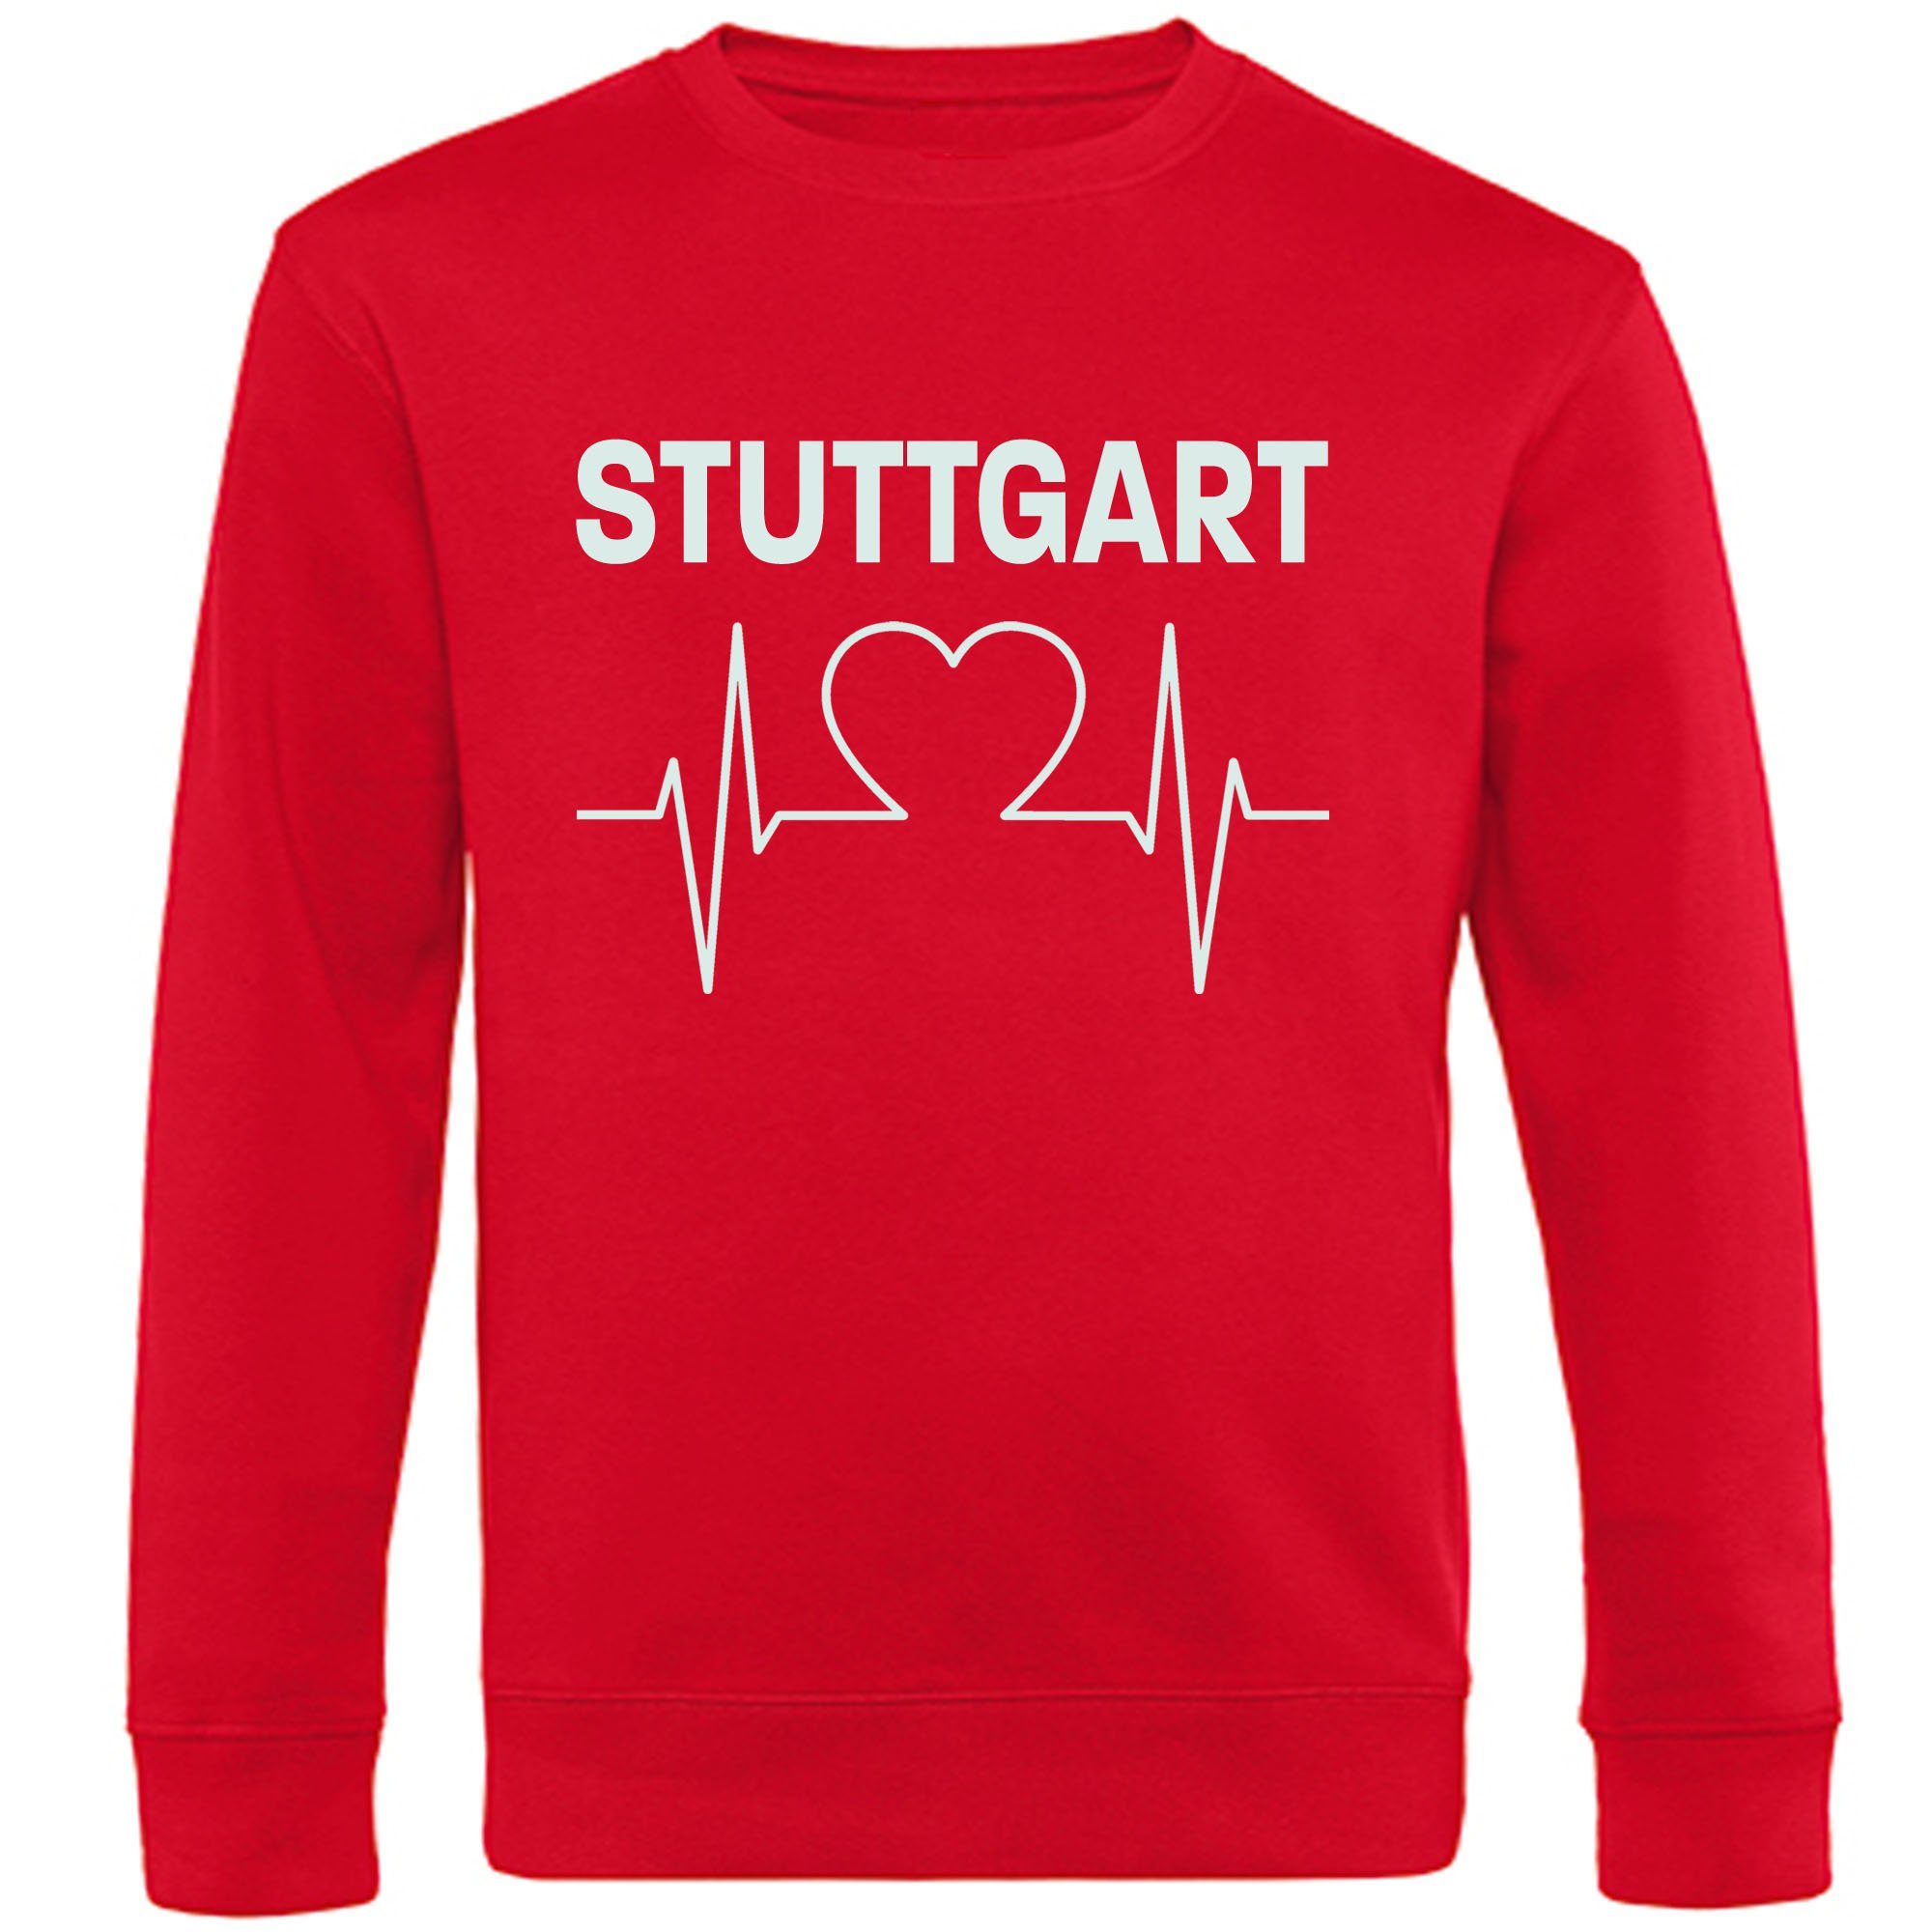 multifanshop Sweatshirt Stuttgart - Herzschlag - Pullover